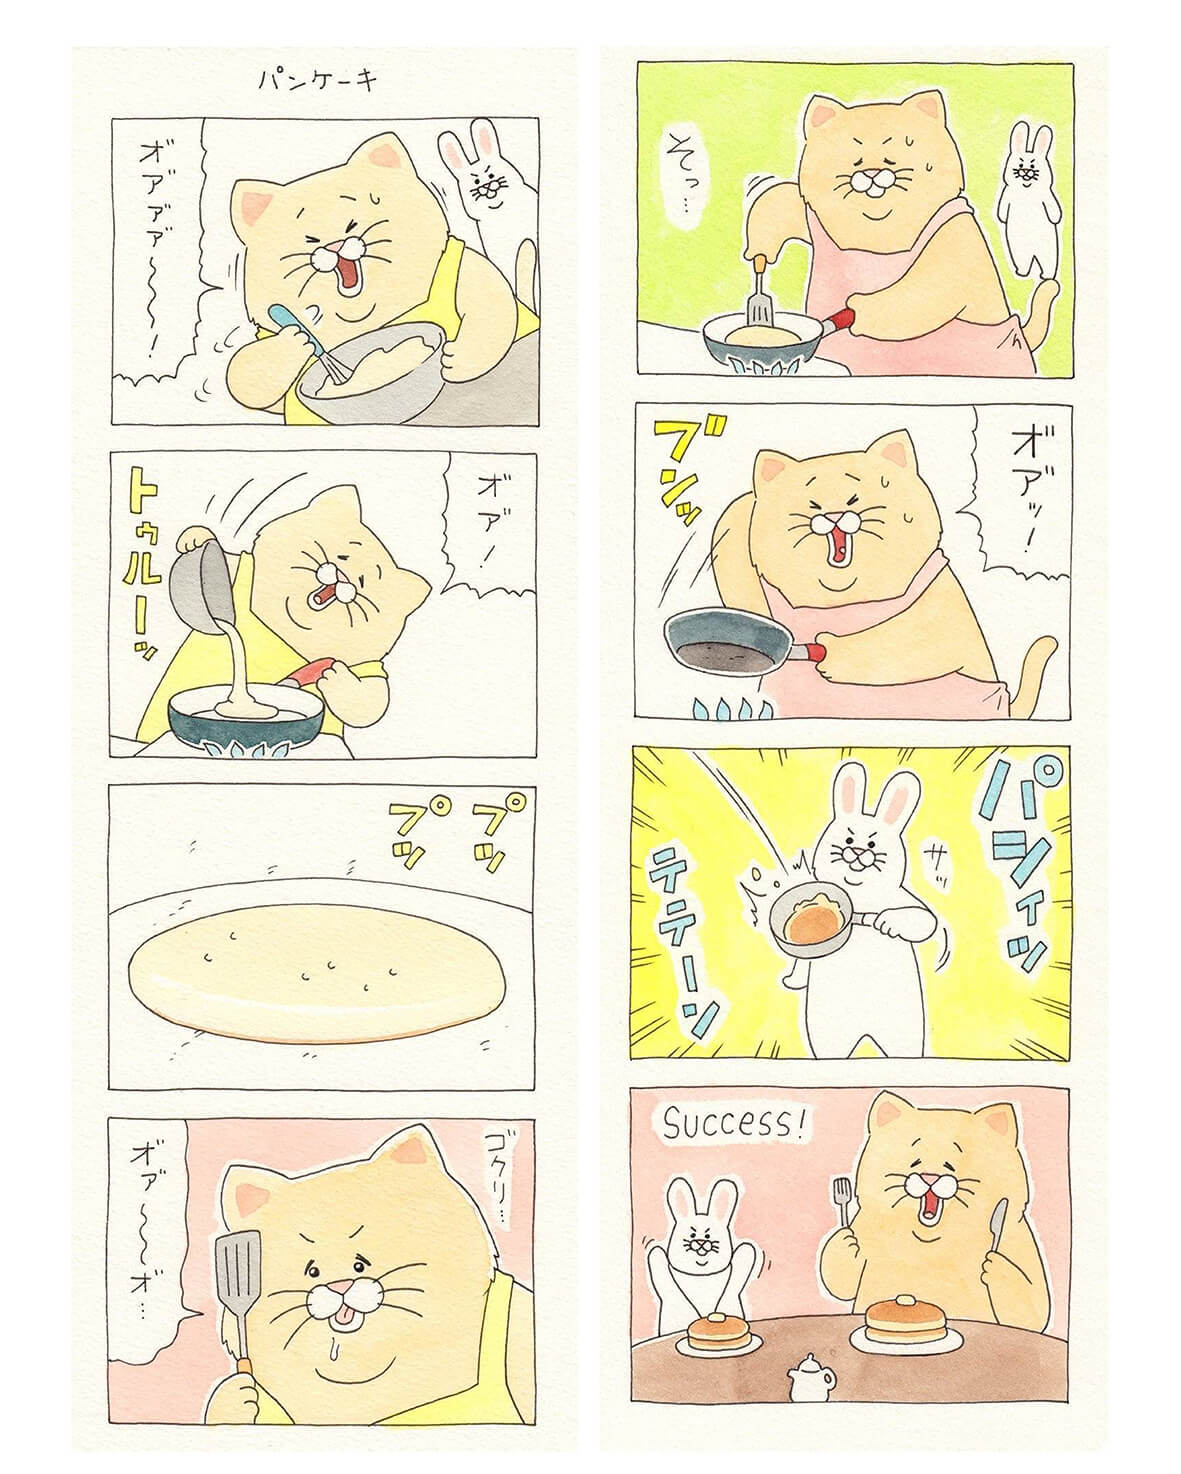 猫マンガ「ネコノヒー」のサンプルストーリー